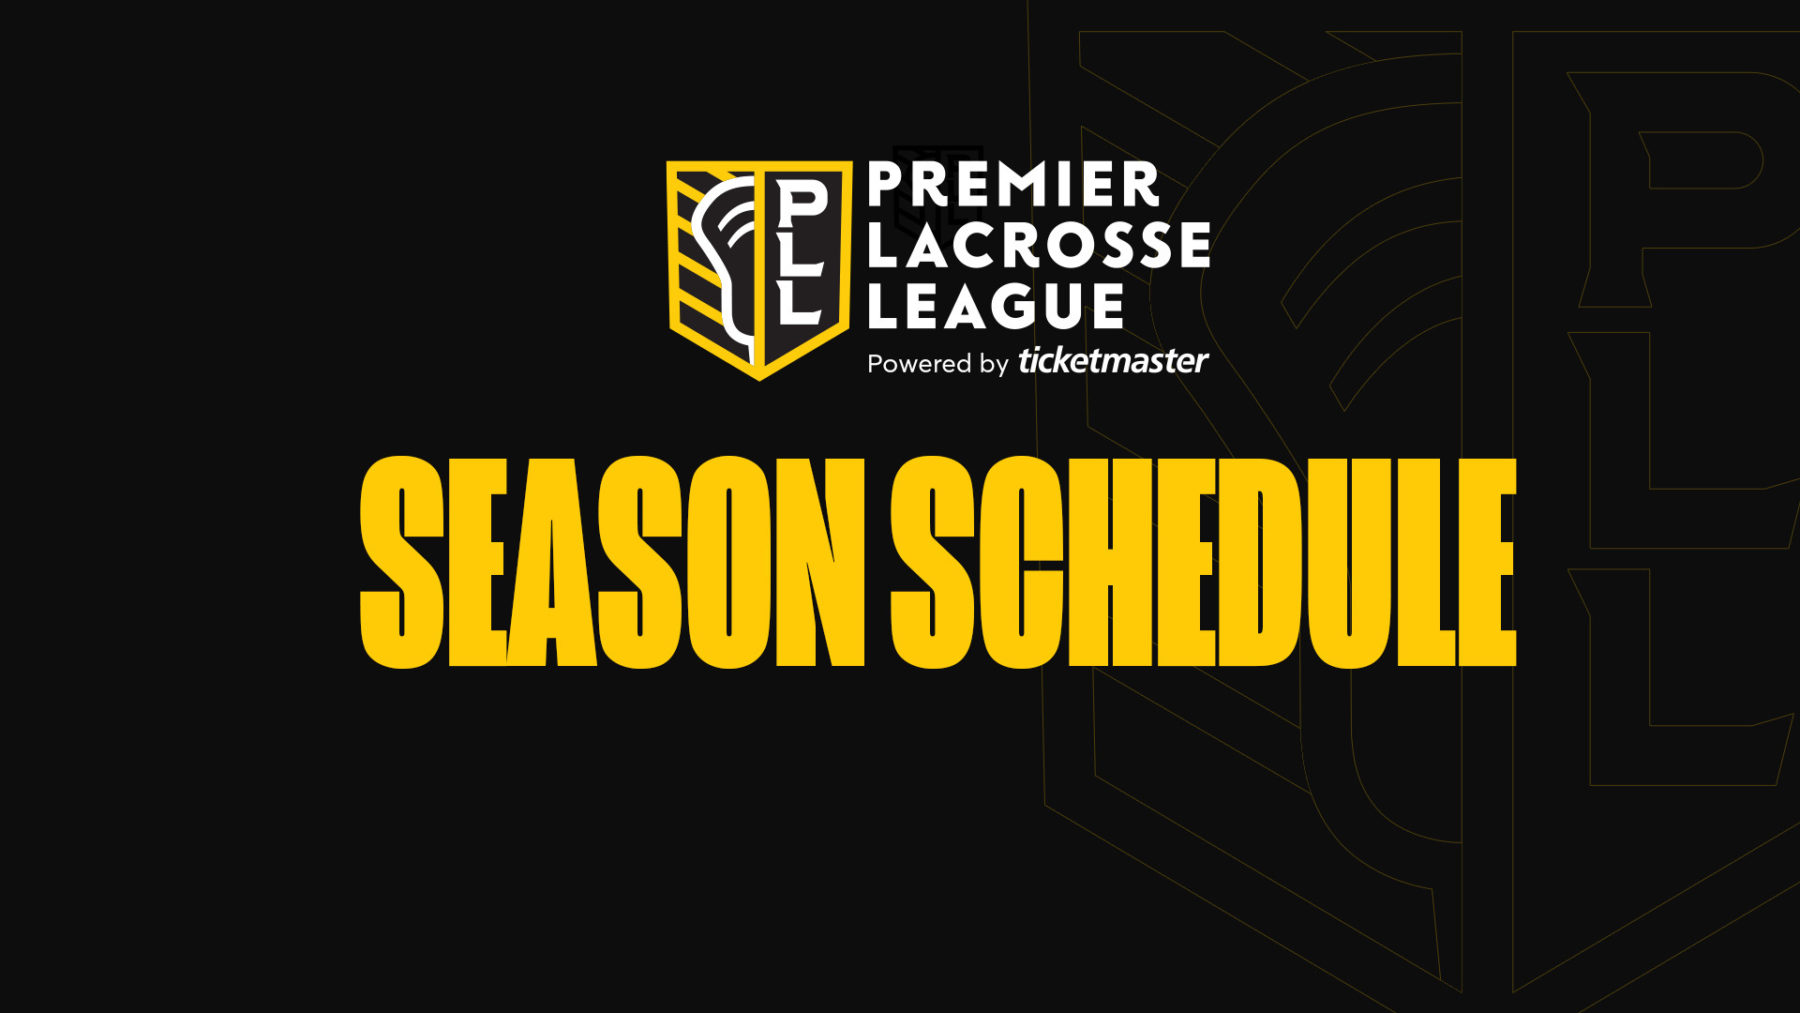 Ready go to ... https://premierlacrosseleague.com/tickets [ Premier Lacrosse League Season Schedule]